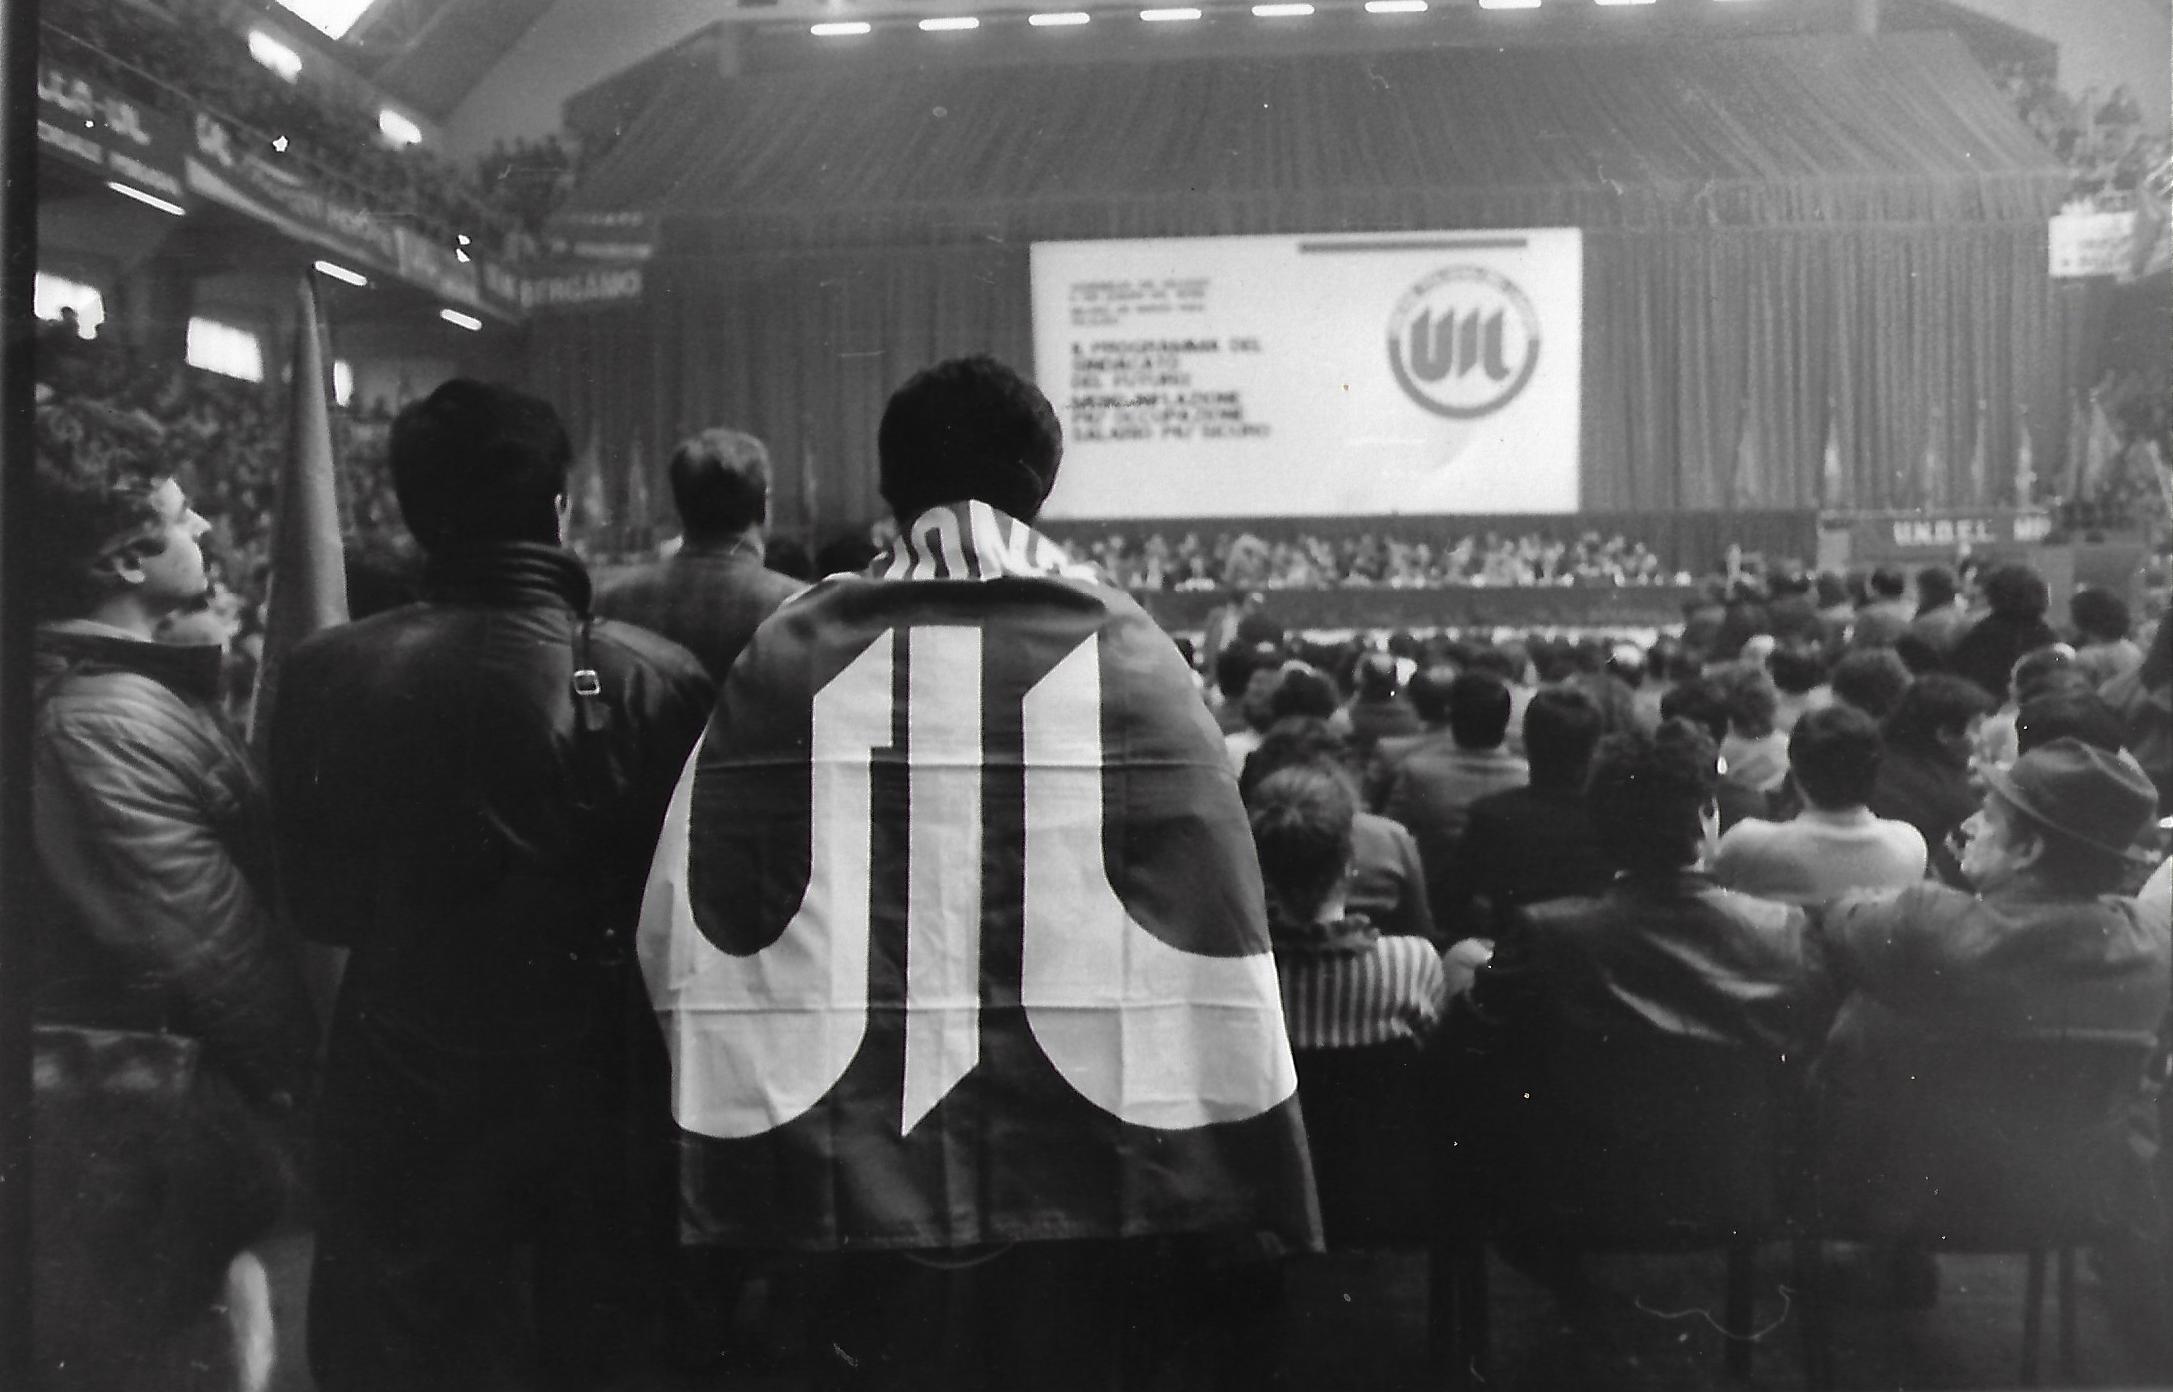 Milano, 26 marzo 1984 - Assemblea delegati e quadri del Nord per laccordo scala mobile